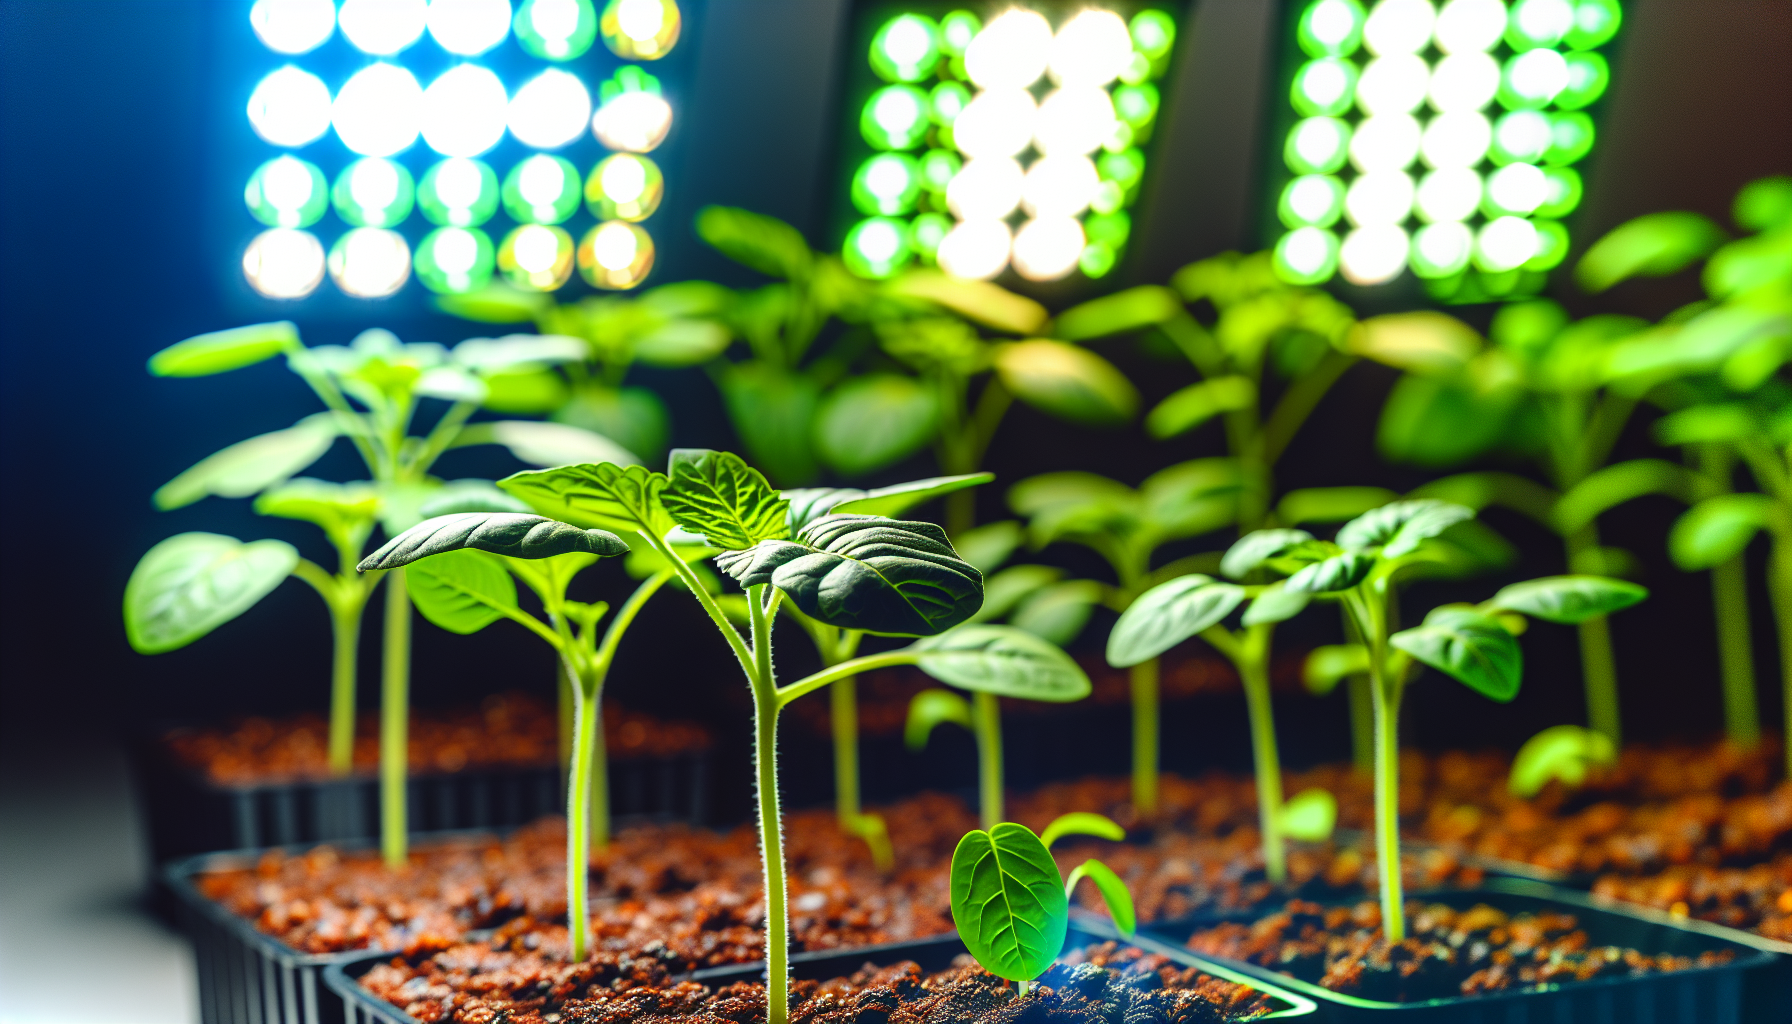 Healthy seedlings under grow lights